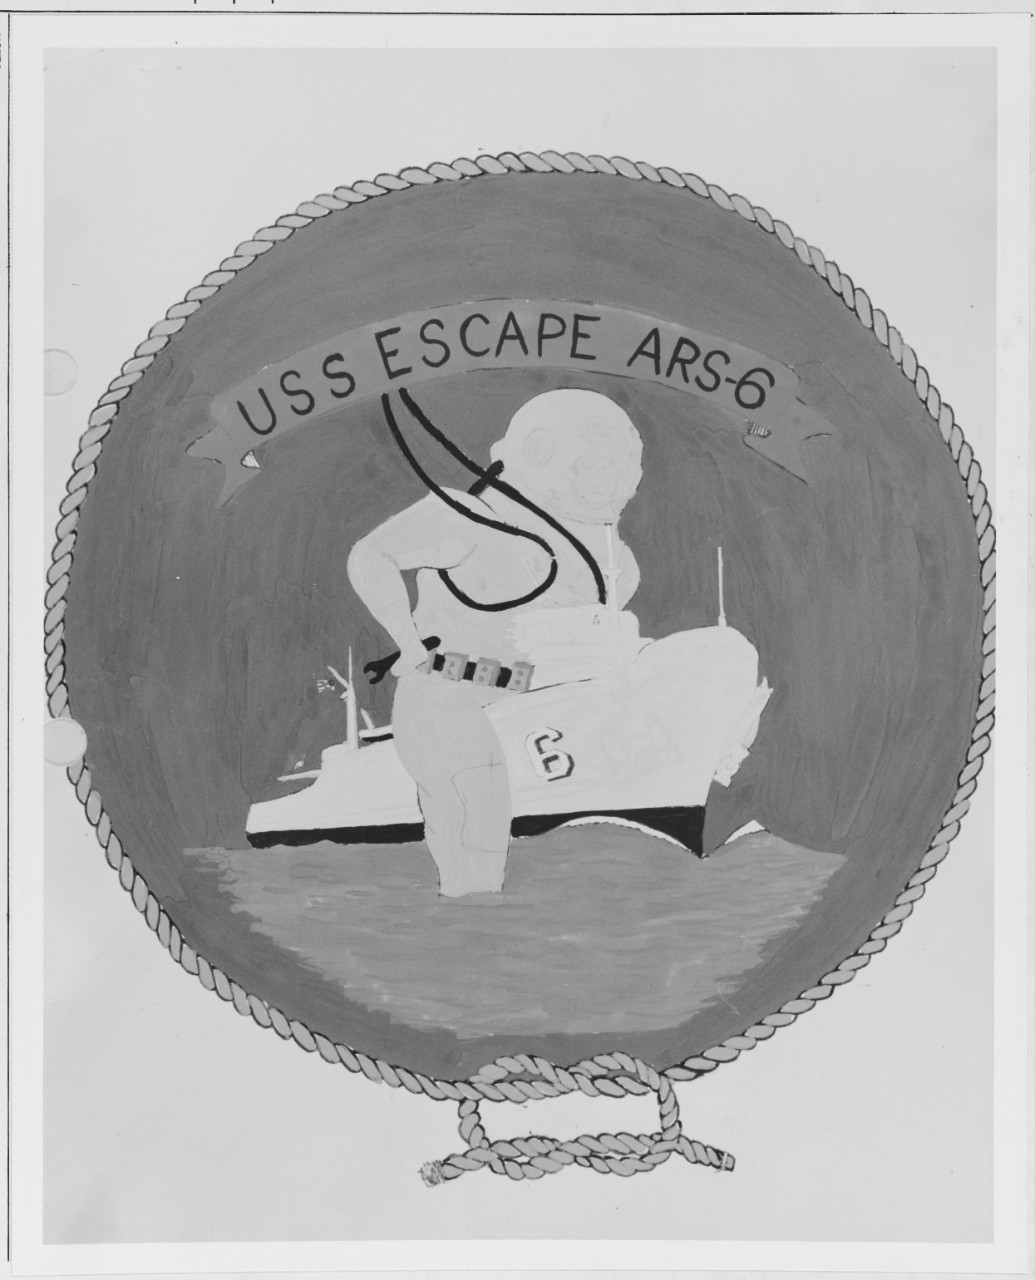 Insignia:  USS ESCAPE (ARS-6)